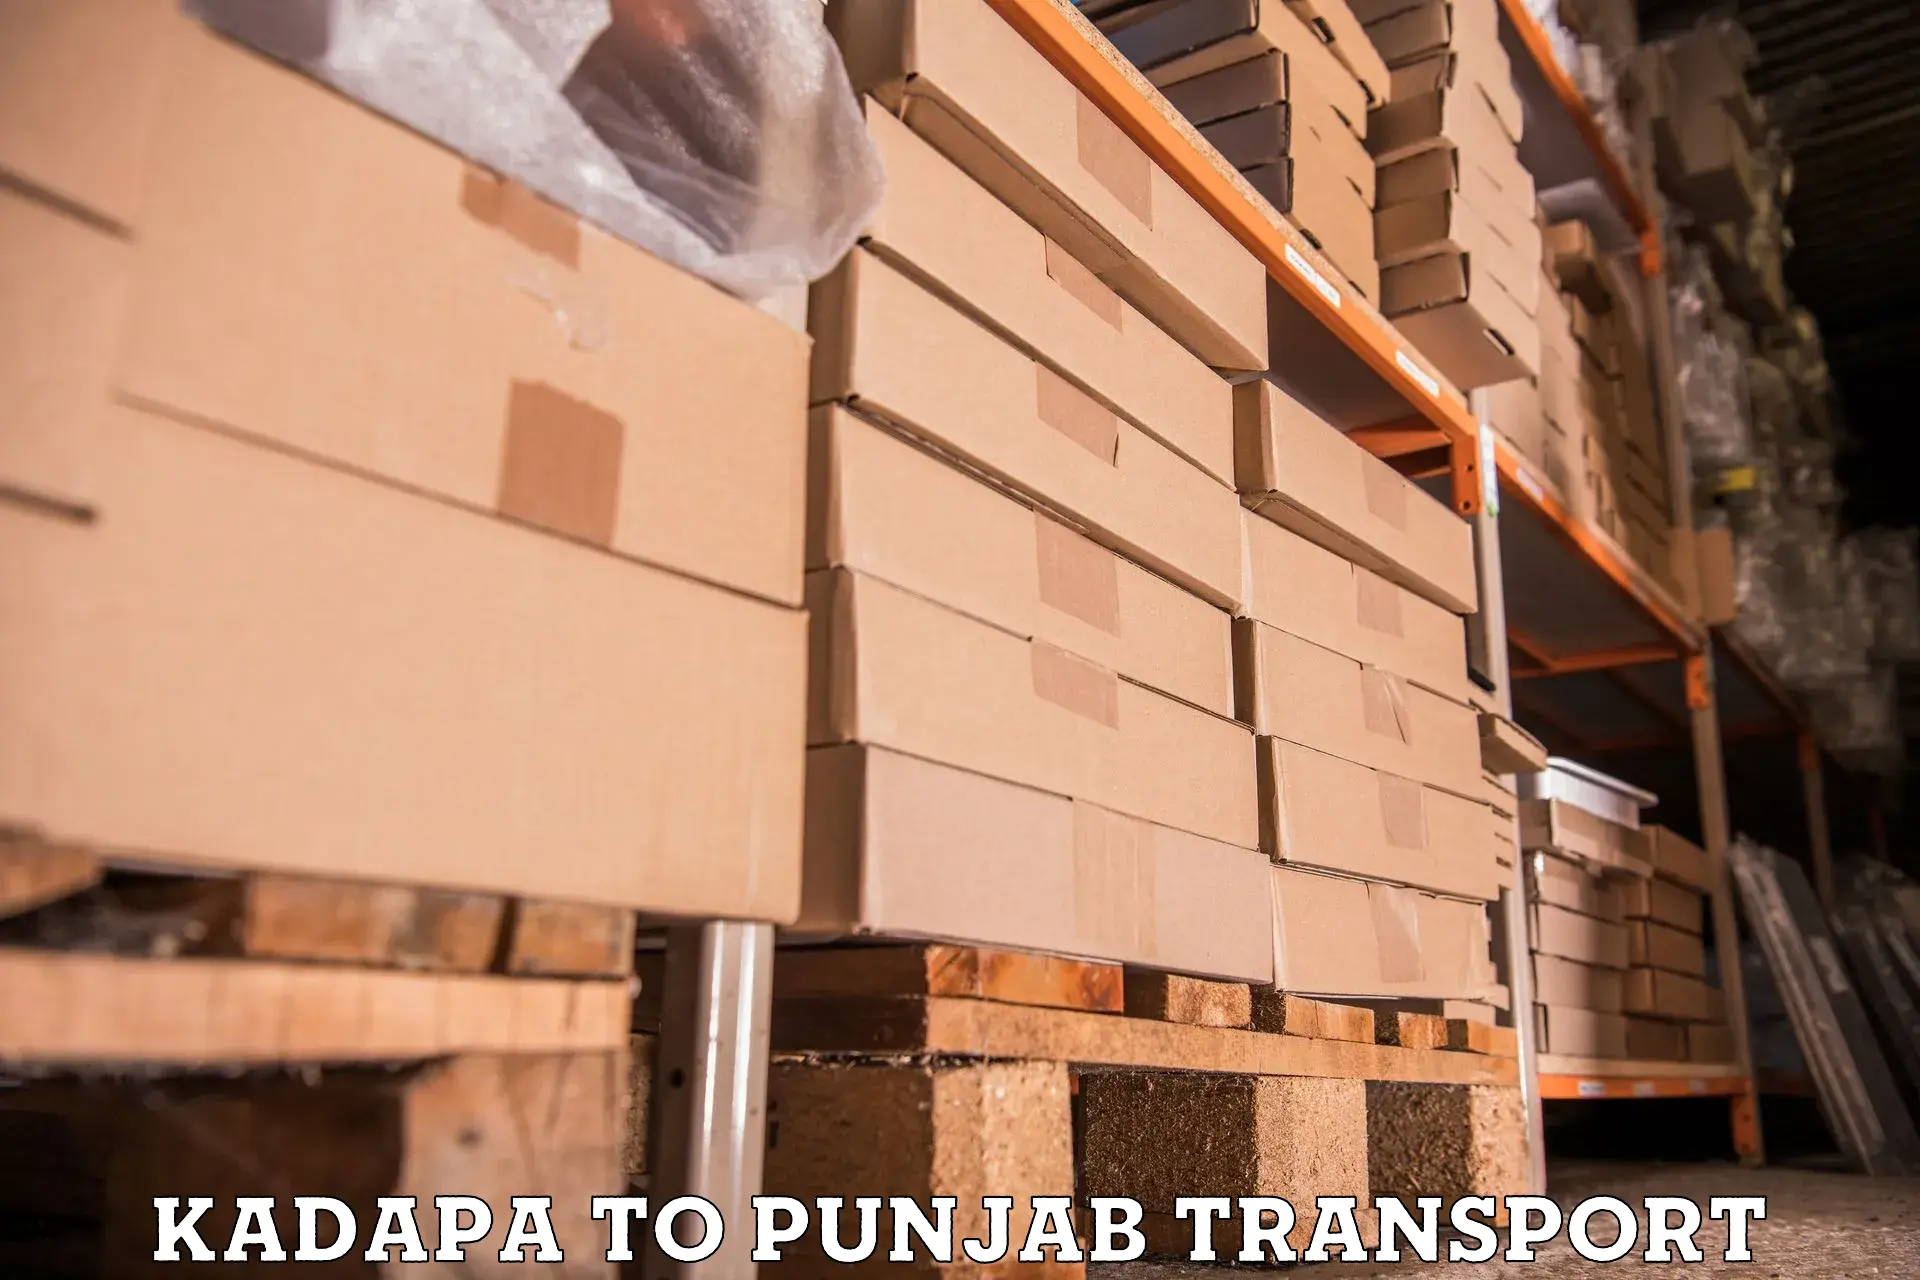 Bike shipping service Kadapa to Patti Tarn Tara